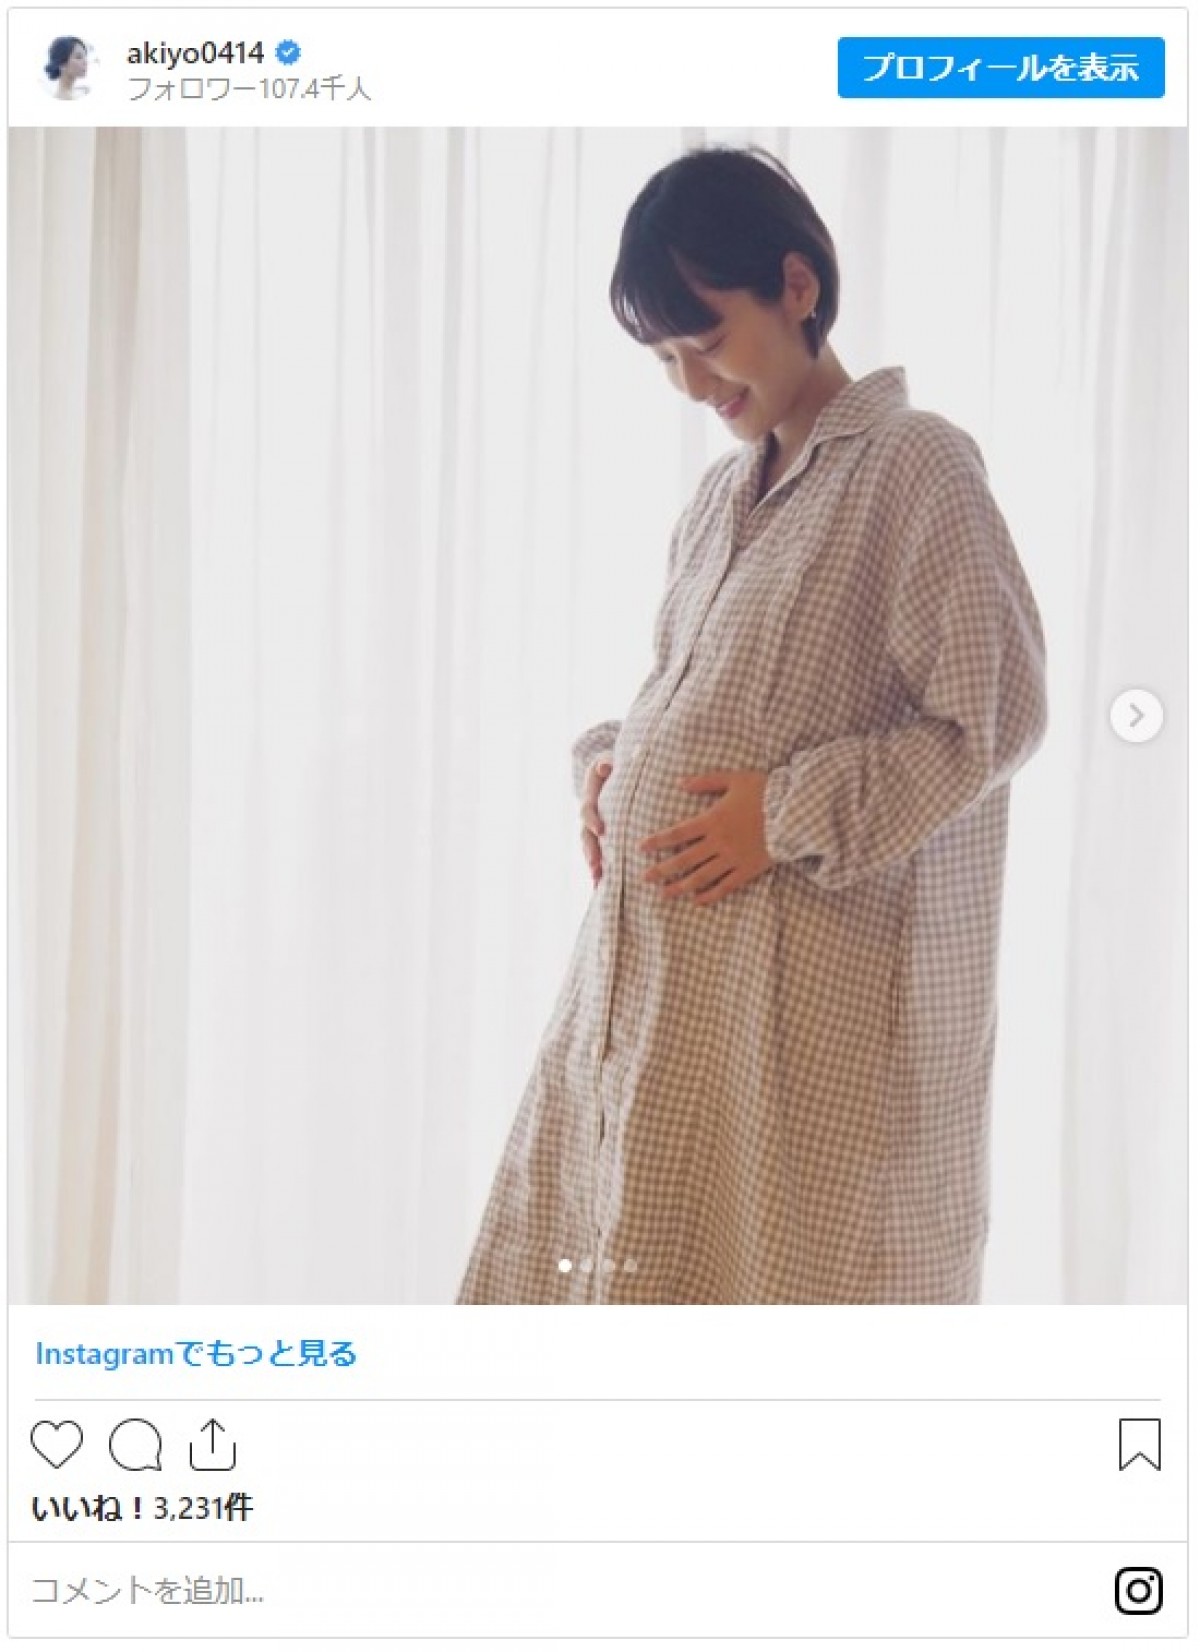 第2子妊娠の吉田明世アナ、ふっくらお腹のマタニティパジャマ姿に反響「素敵です」